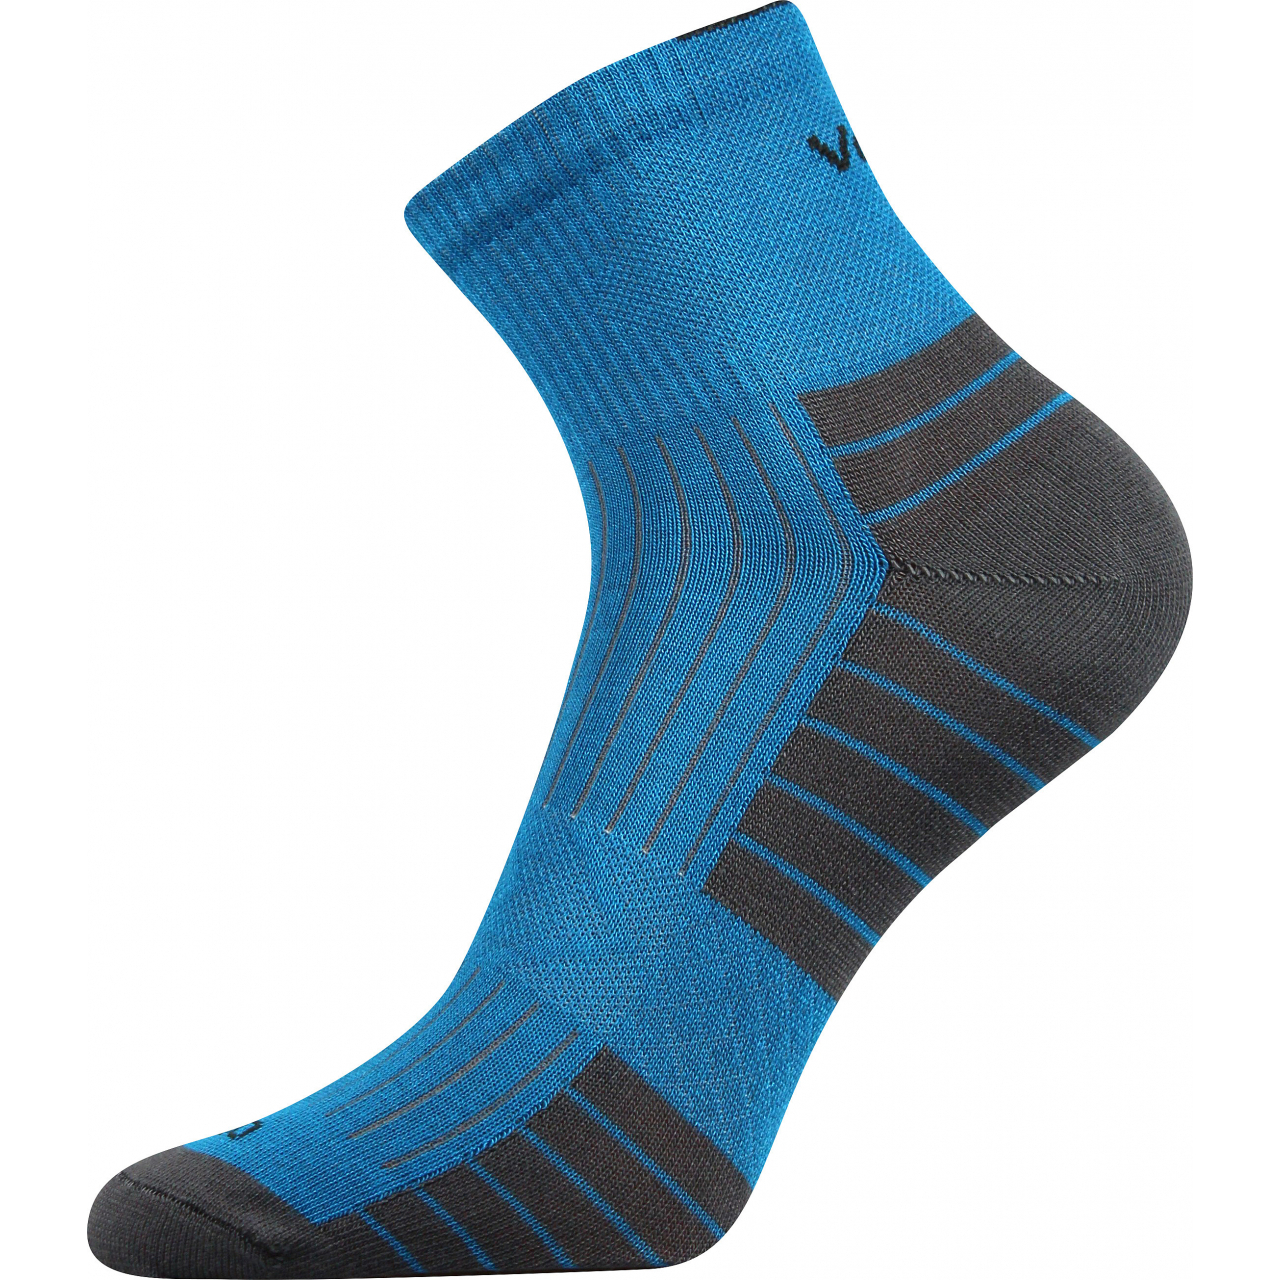 Ponožky bambusové unisex Voxx Belkin - modré-šedé, 35-38